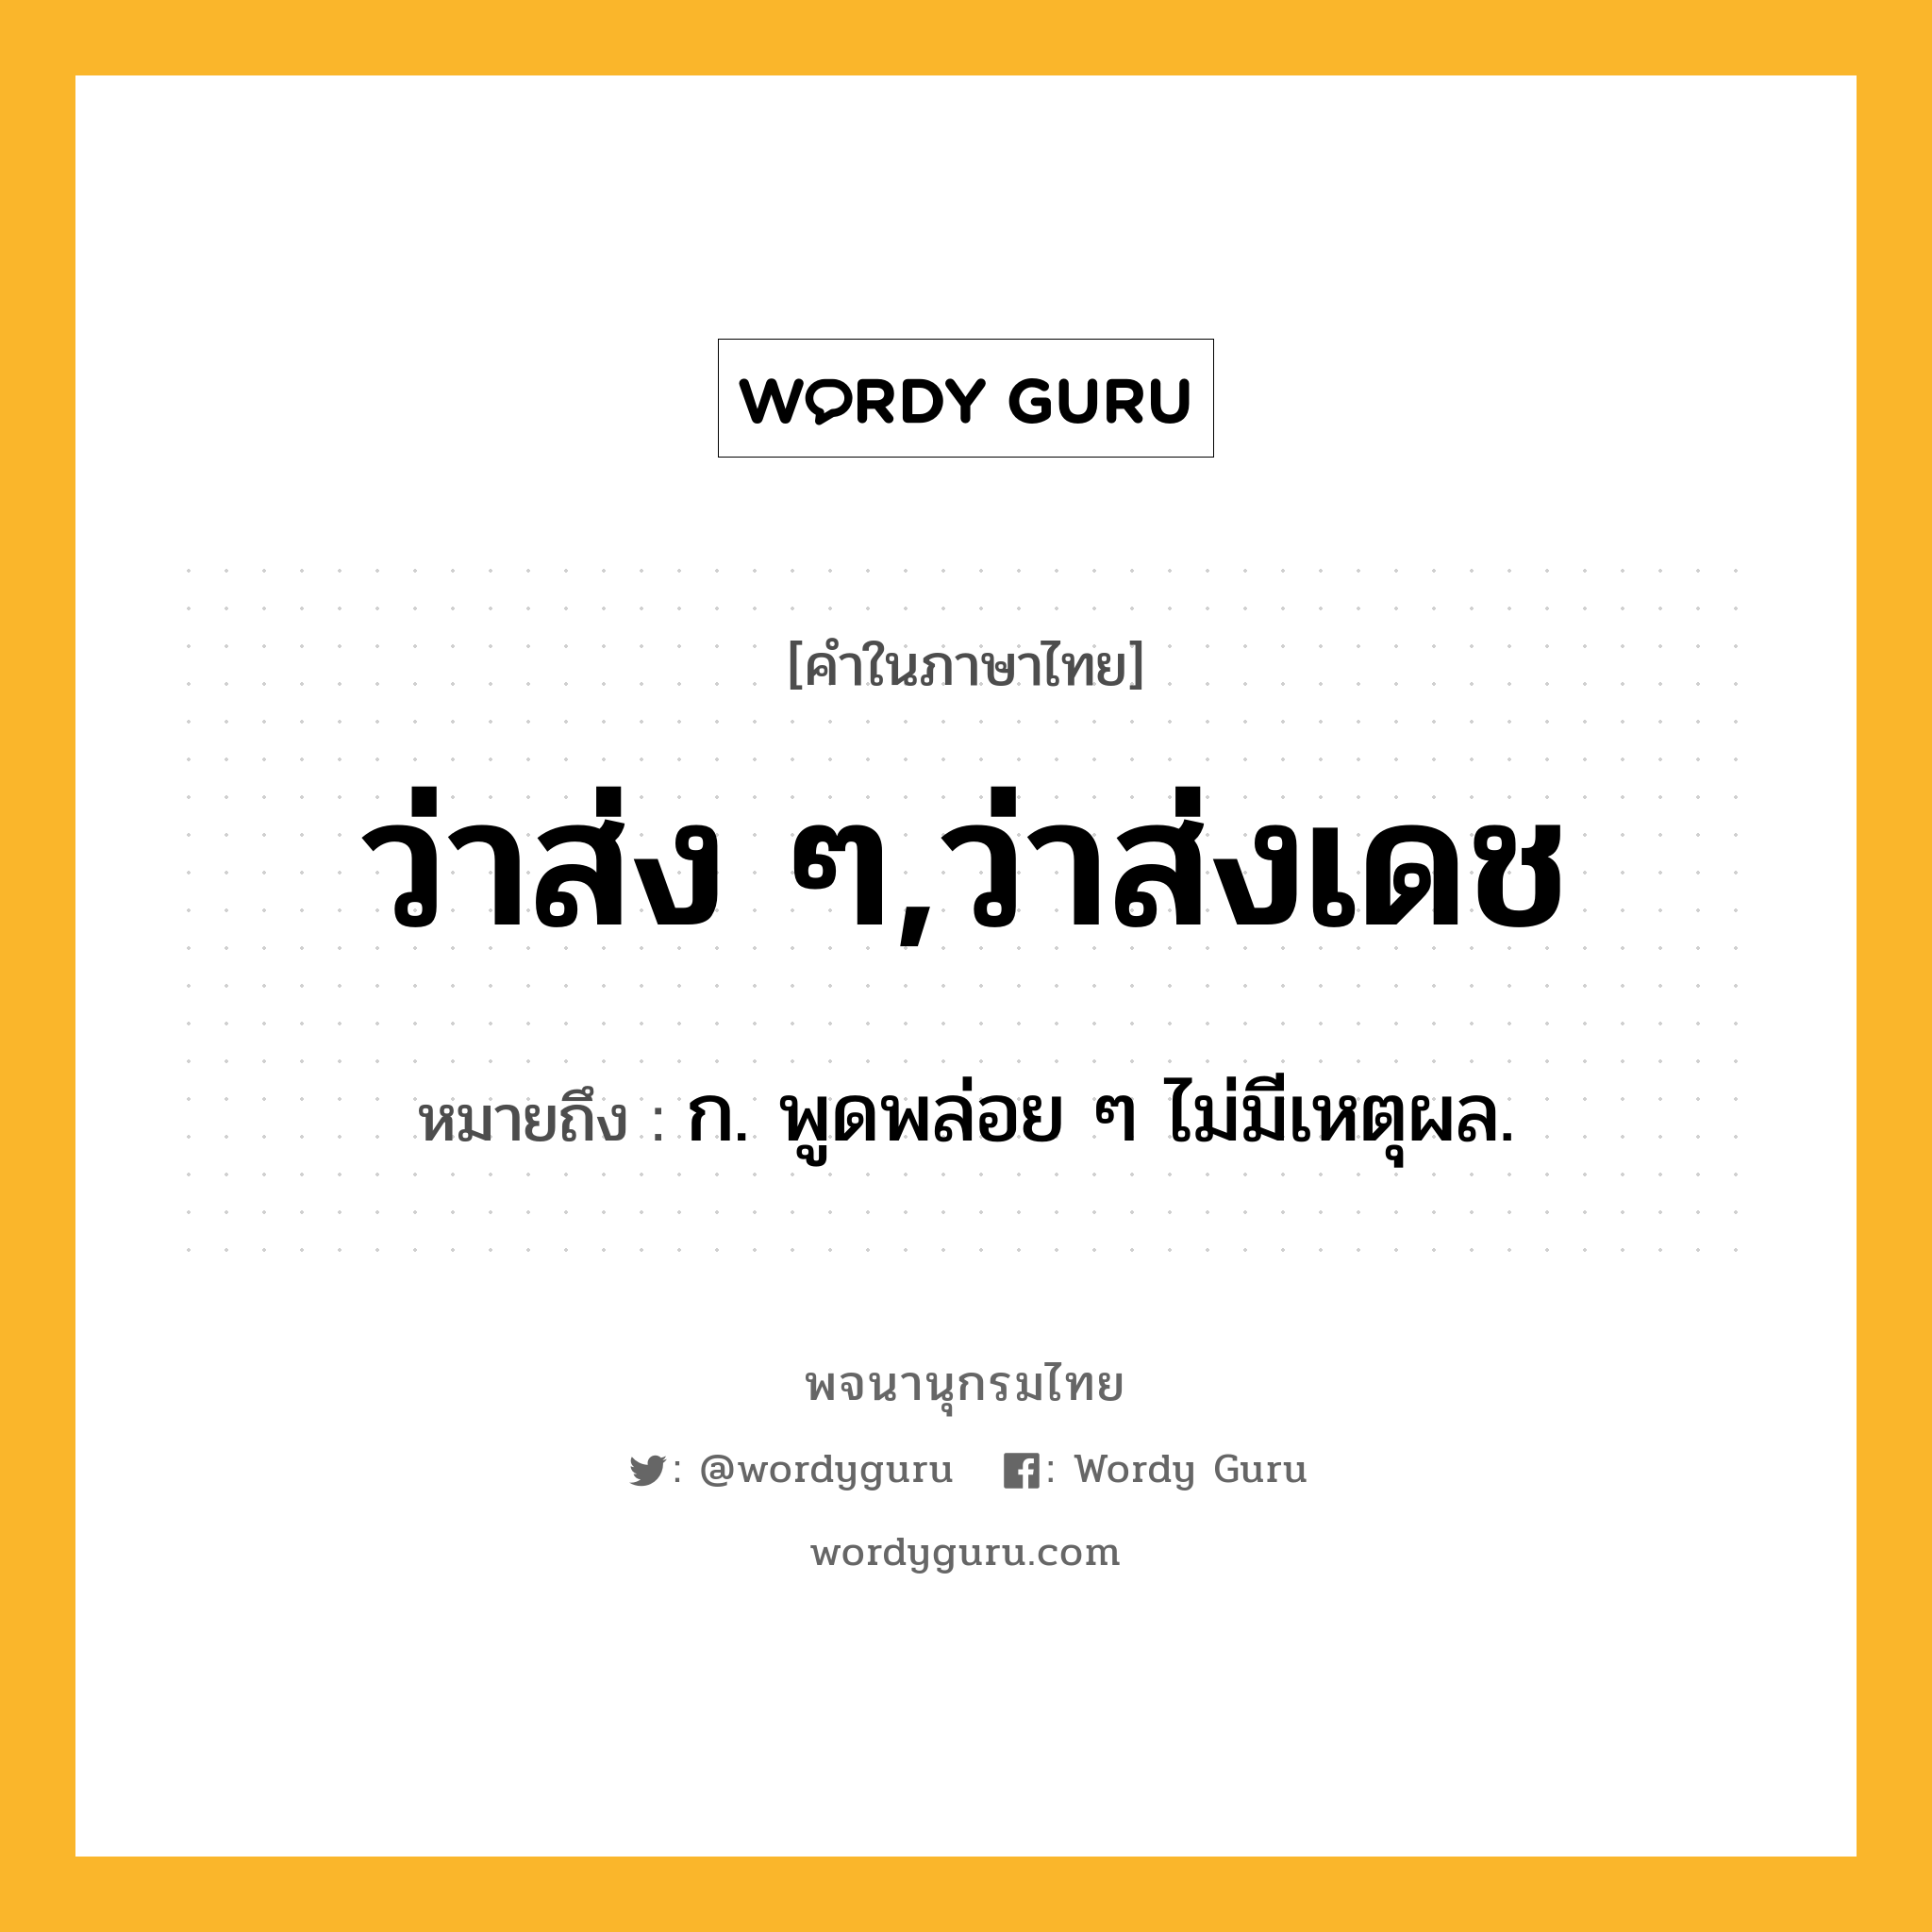 ว่าส่ง ๆ,ว่าส่งเดช ความหมาย หมายถึงอะไร?, คำในภาษาไทย ว่าส่ง ๆ,ว่าส่งเดช หมายถึง ก. พูดพล่อย ๆ ไม่มีเหตุผล.